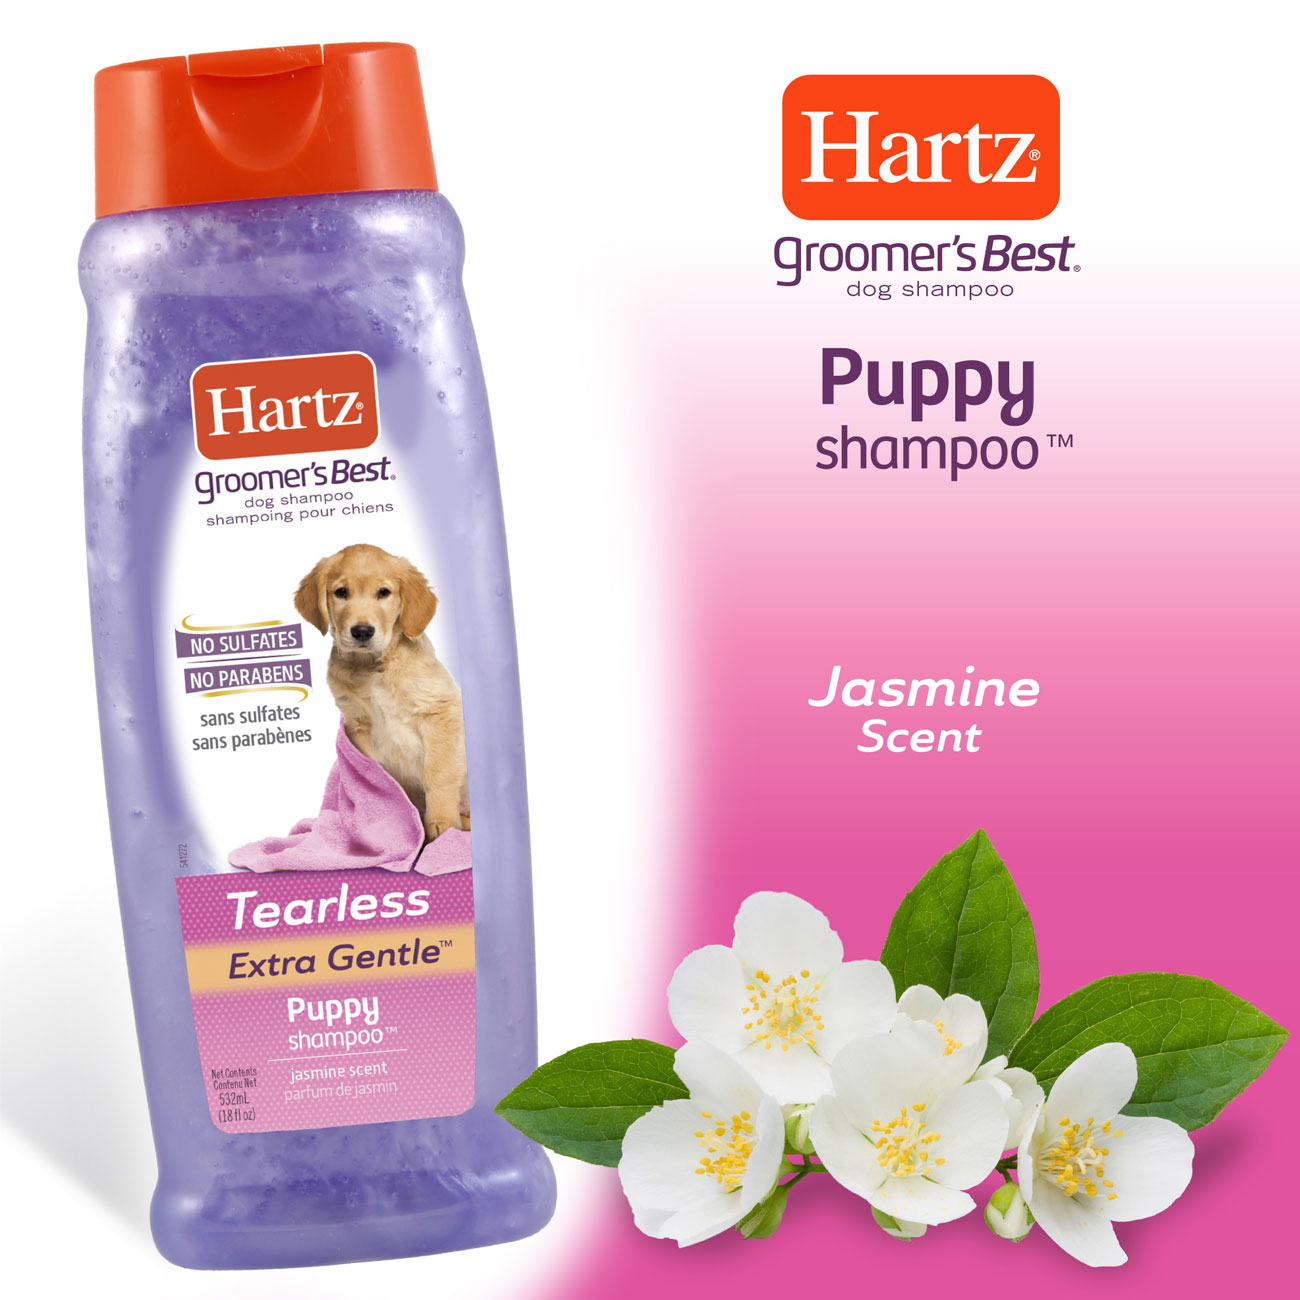 Can I Use Dog Shampoo | dualcitizenship.malawiassociation.org